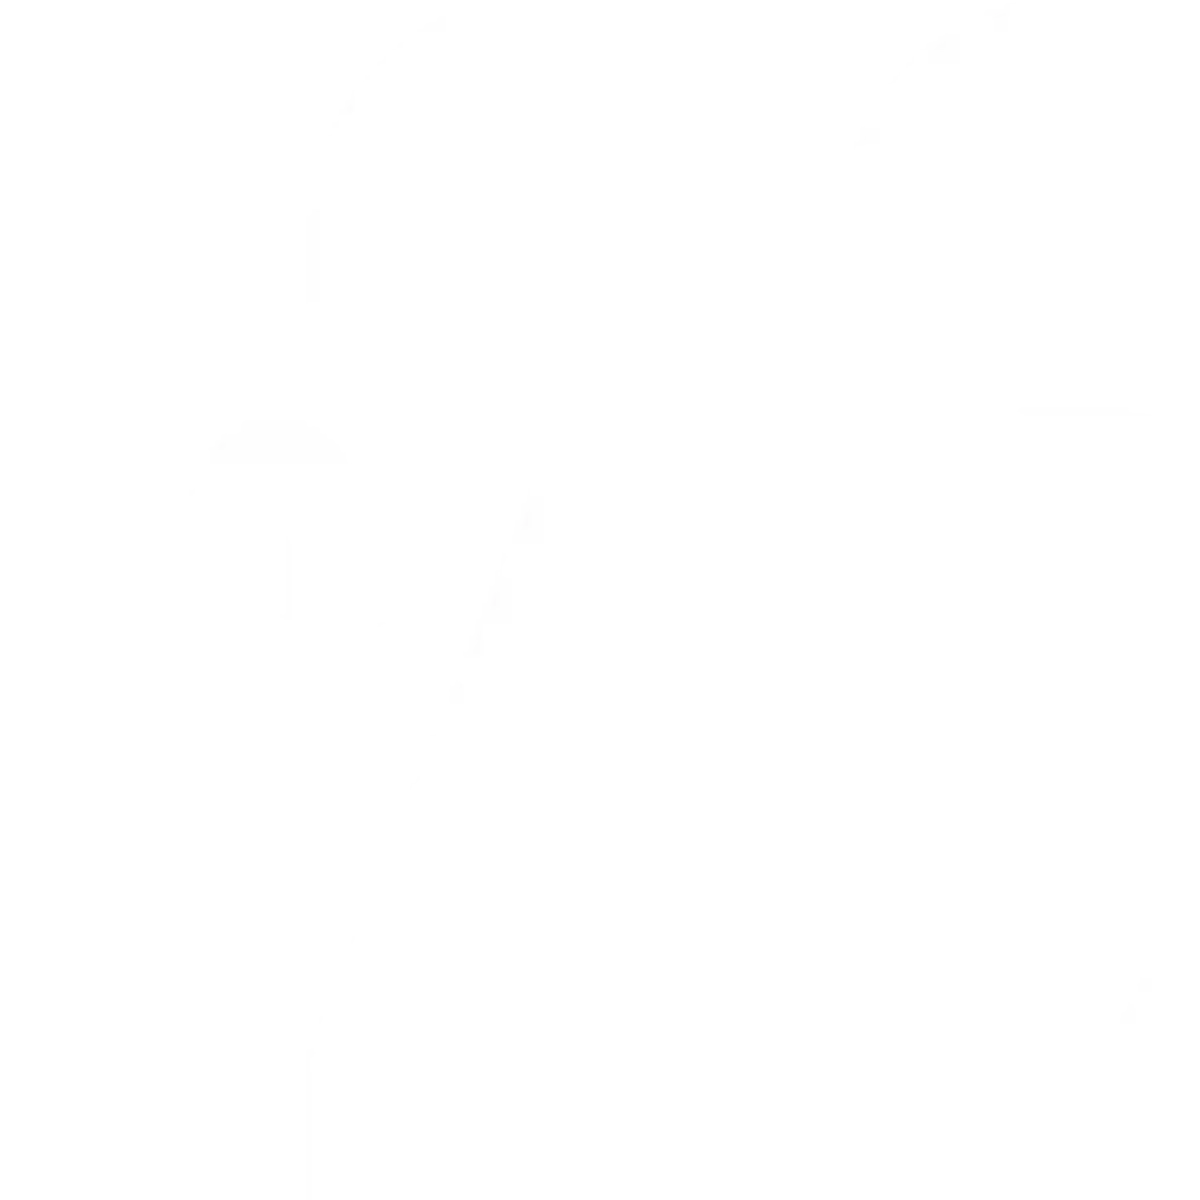 No. 26